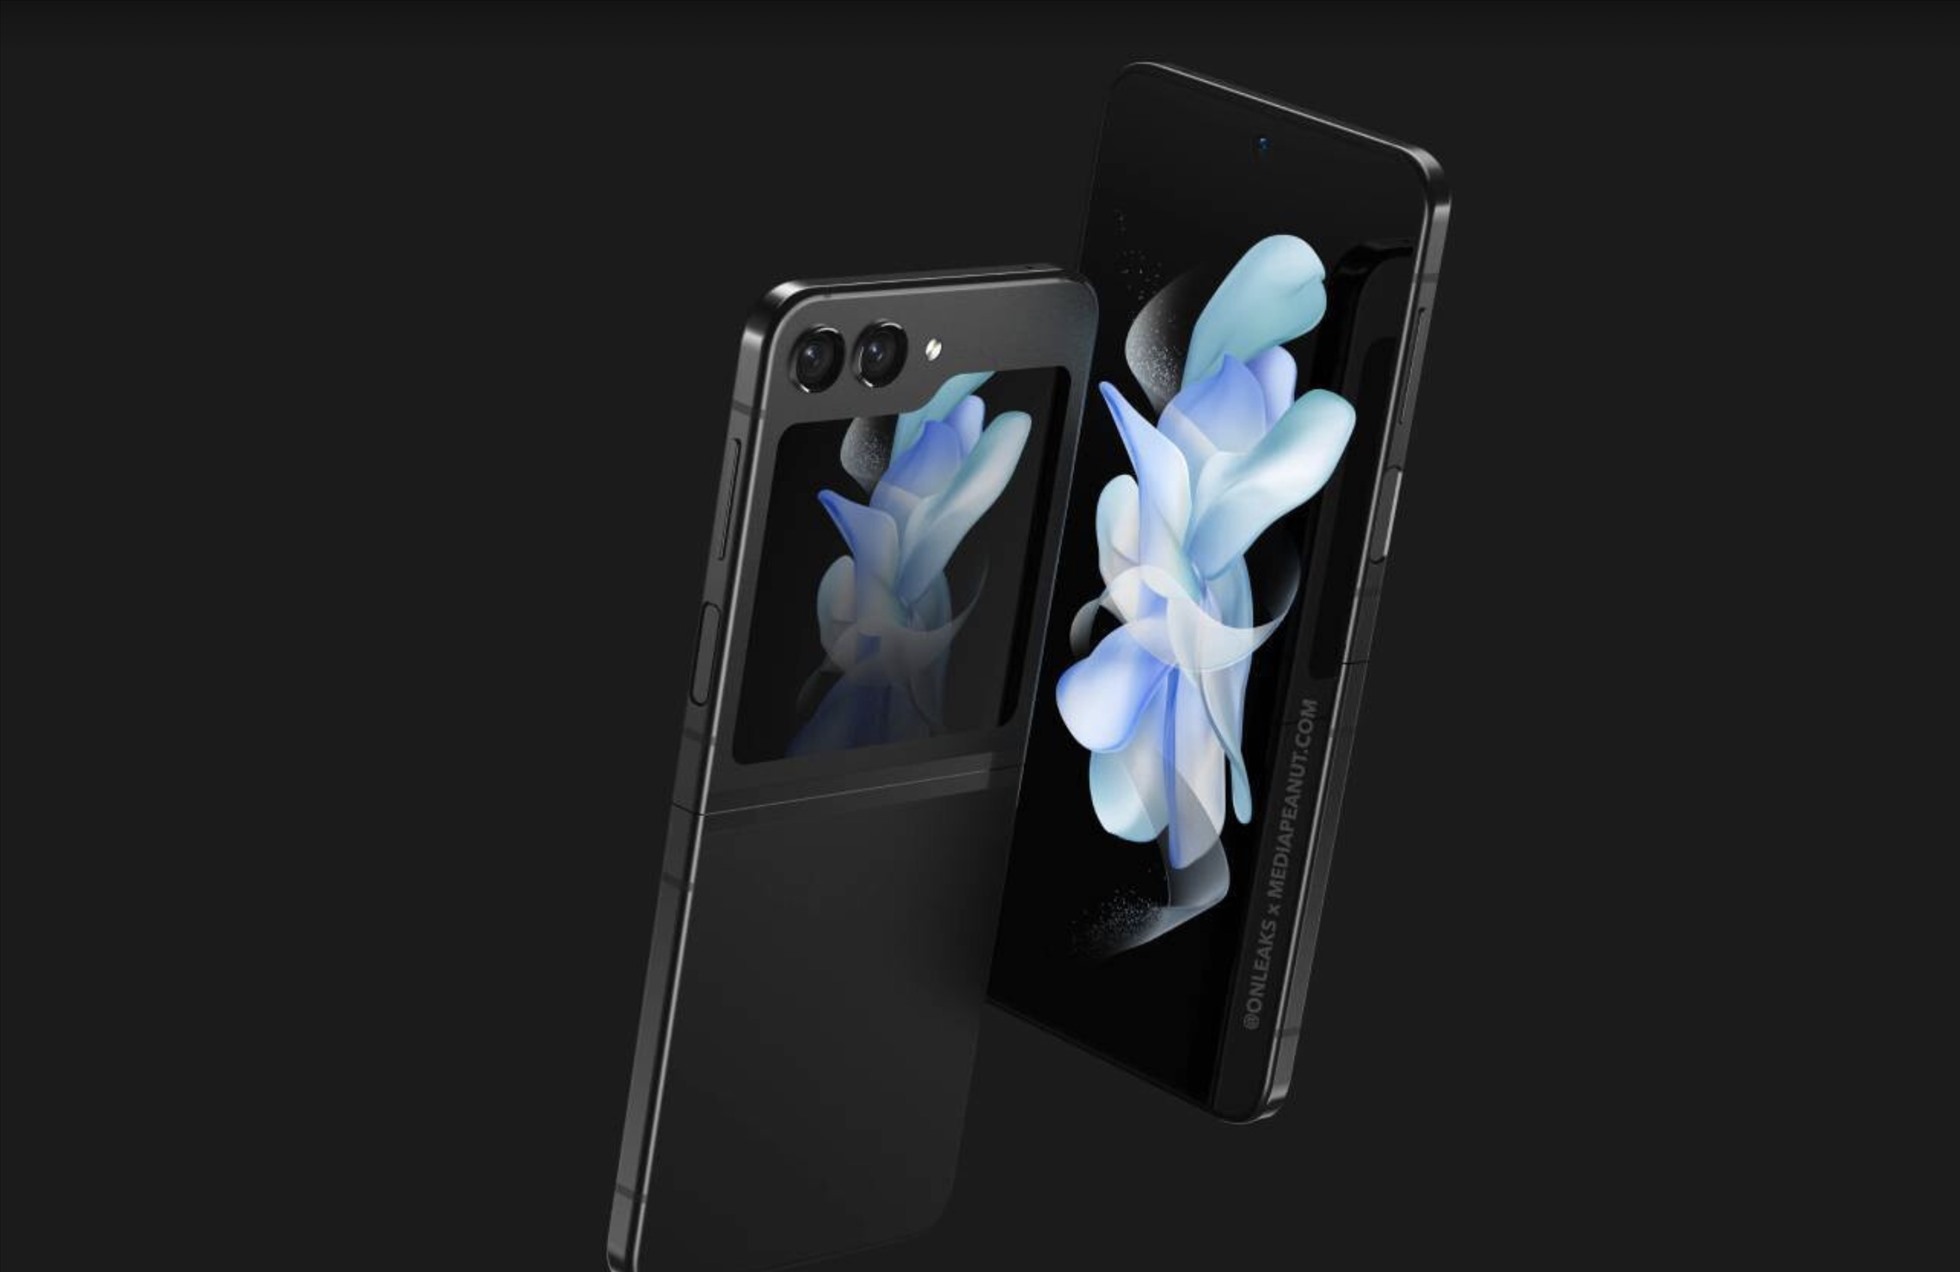 Phiên bản điện thoại gập mới của Samsung được cho là sẽ mỏng và nhẹ hơn một chút. Ảnh: MediaPeanut/Steve H. McFly